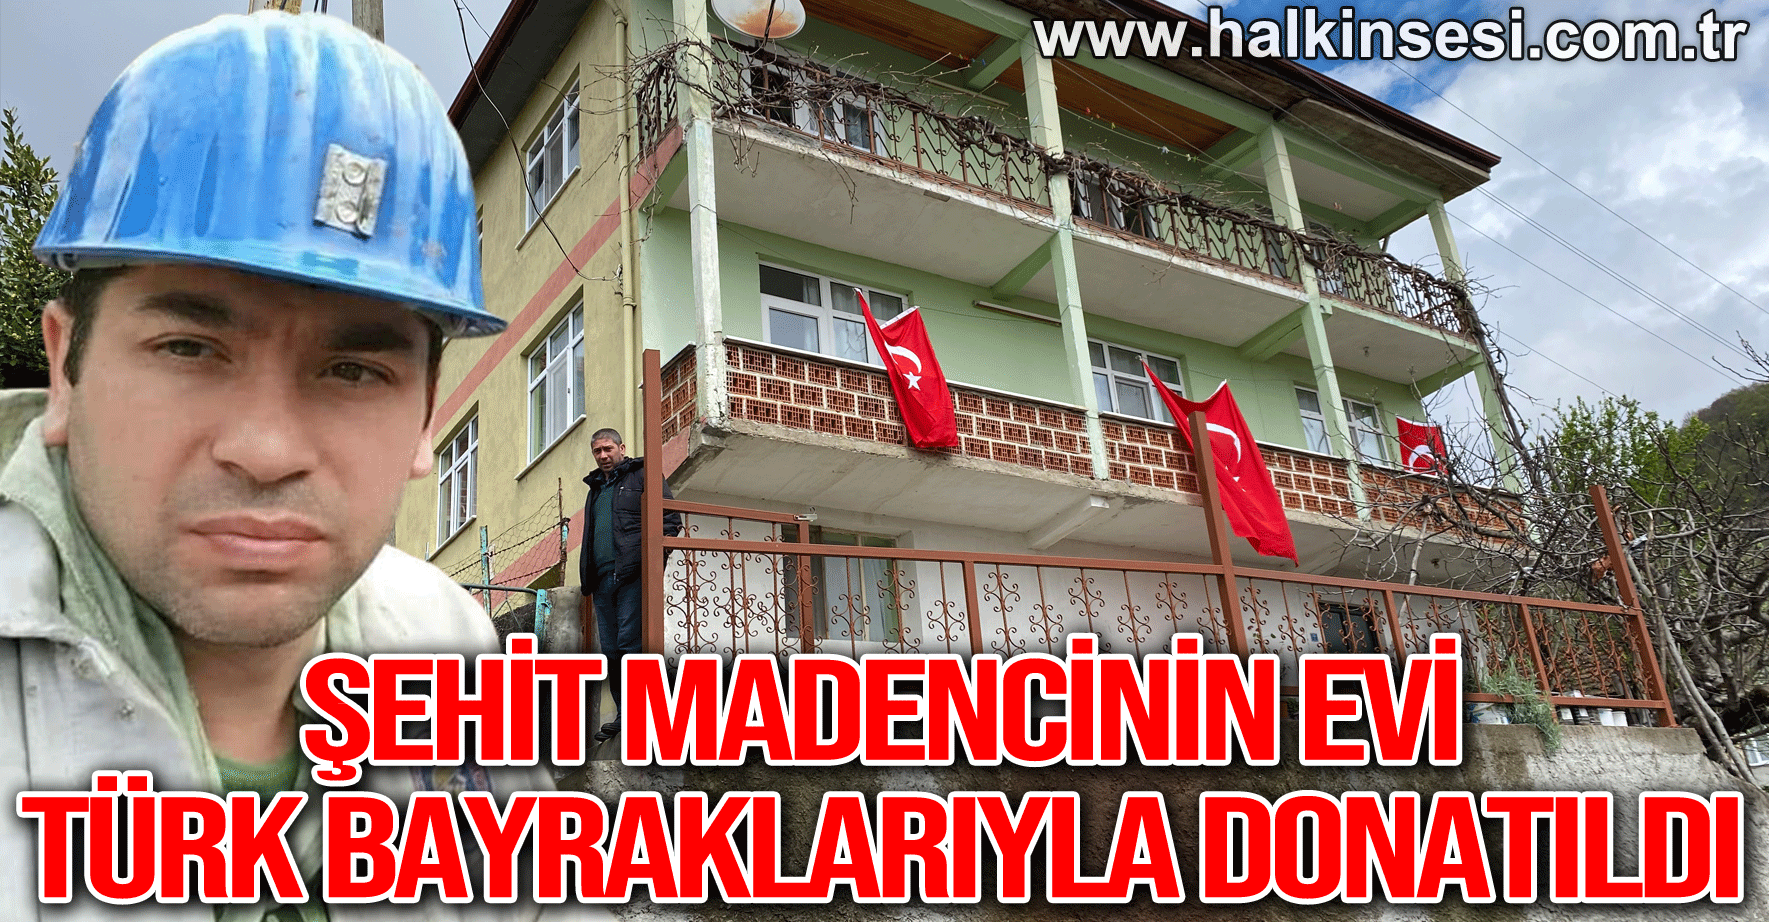 Şehit madencinin evi Türk bayraklarıyla donatıldı